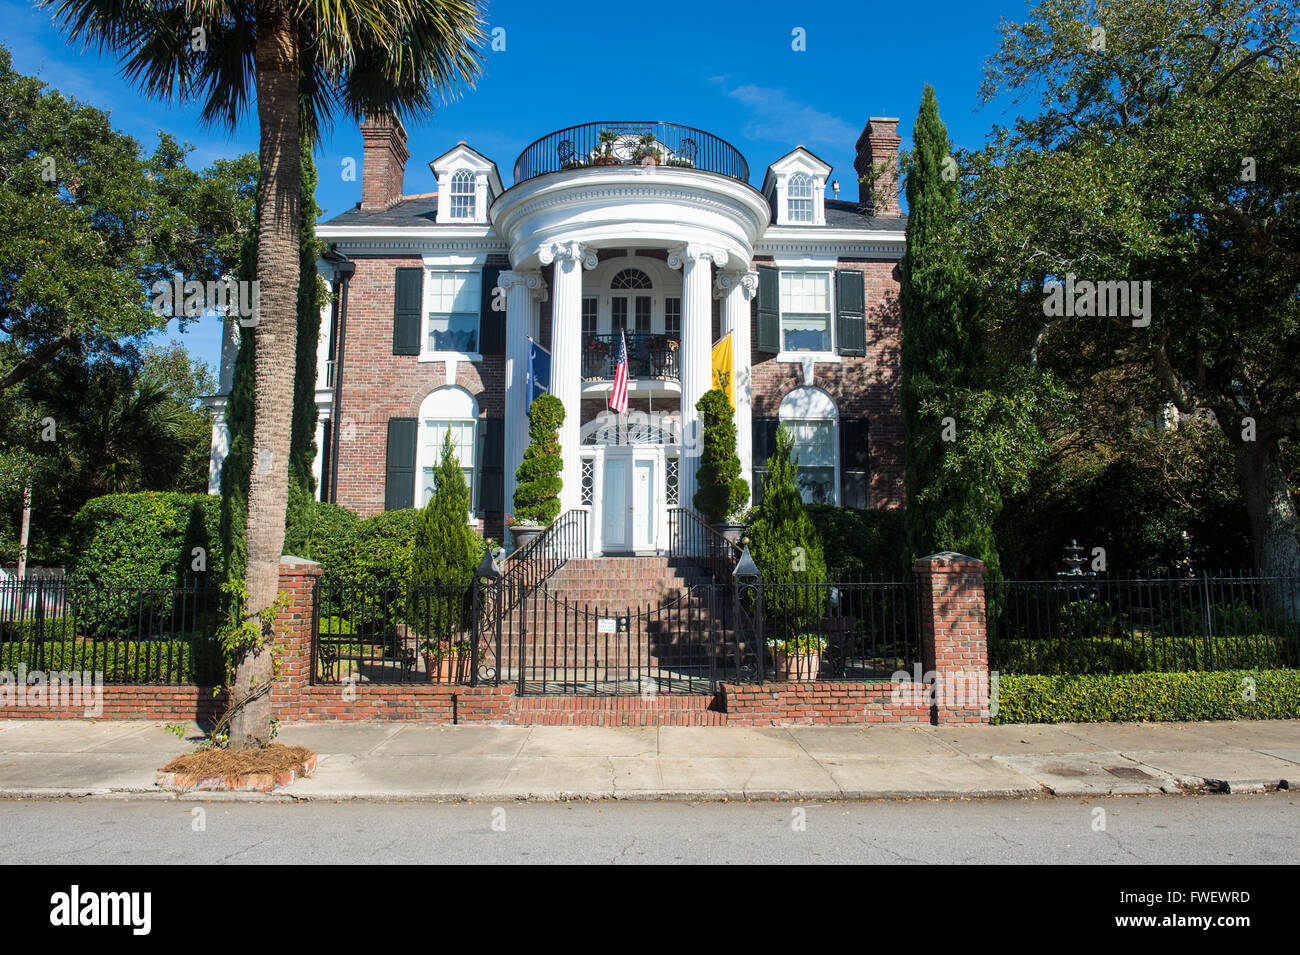 Maison coloniale à Charleston, Caroline du Sud, États-Unis d'Amérique, Amérique du Nord Banque D'Images